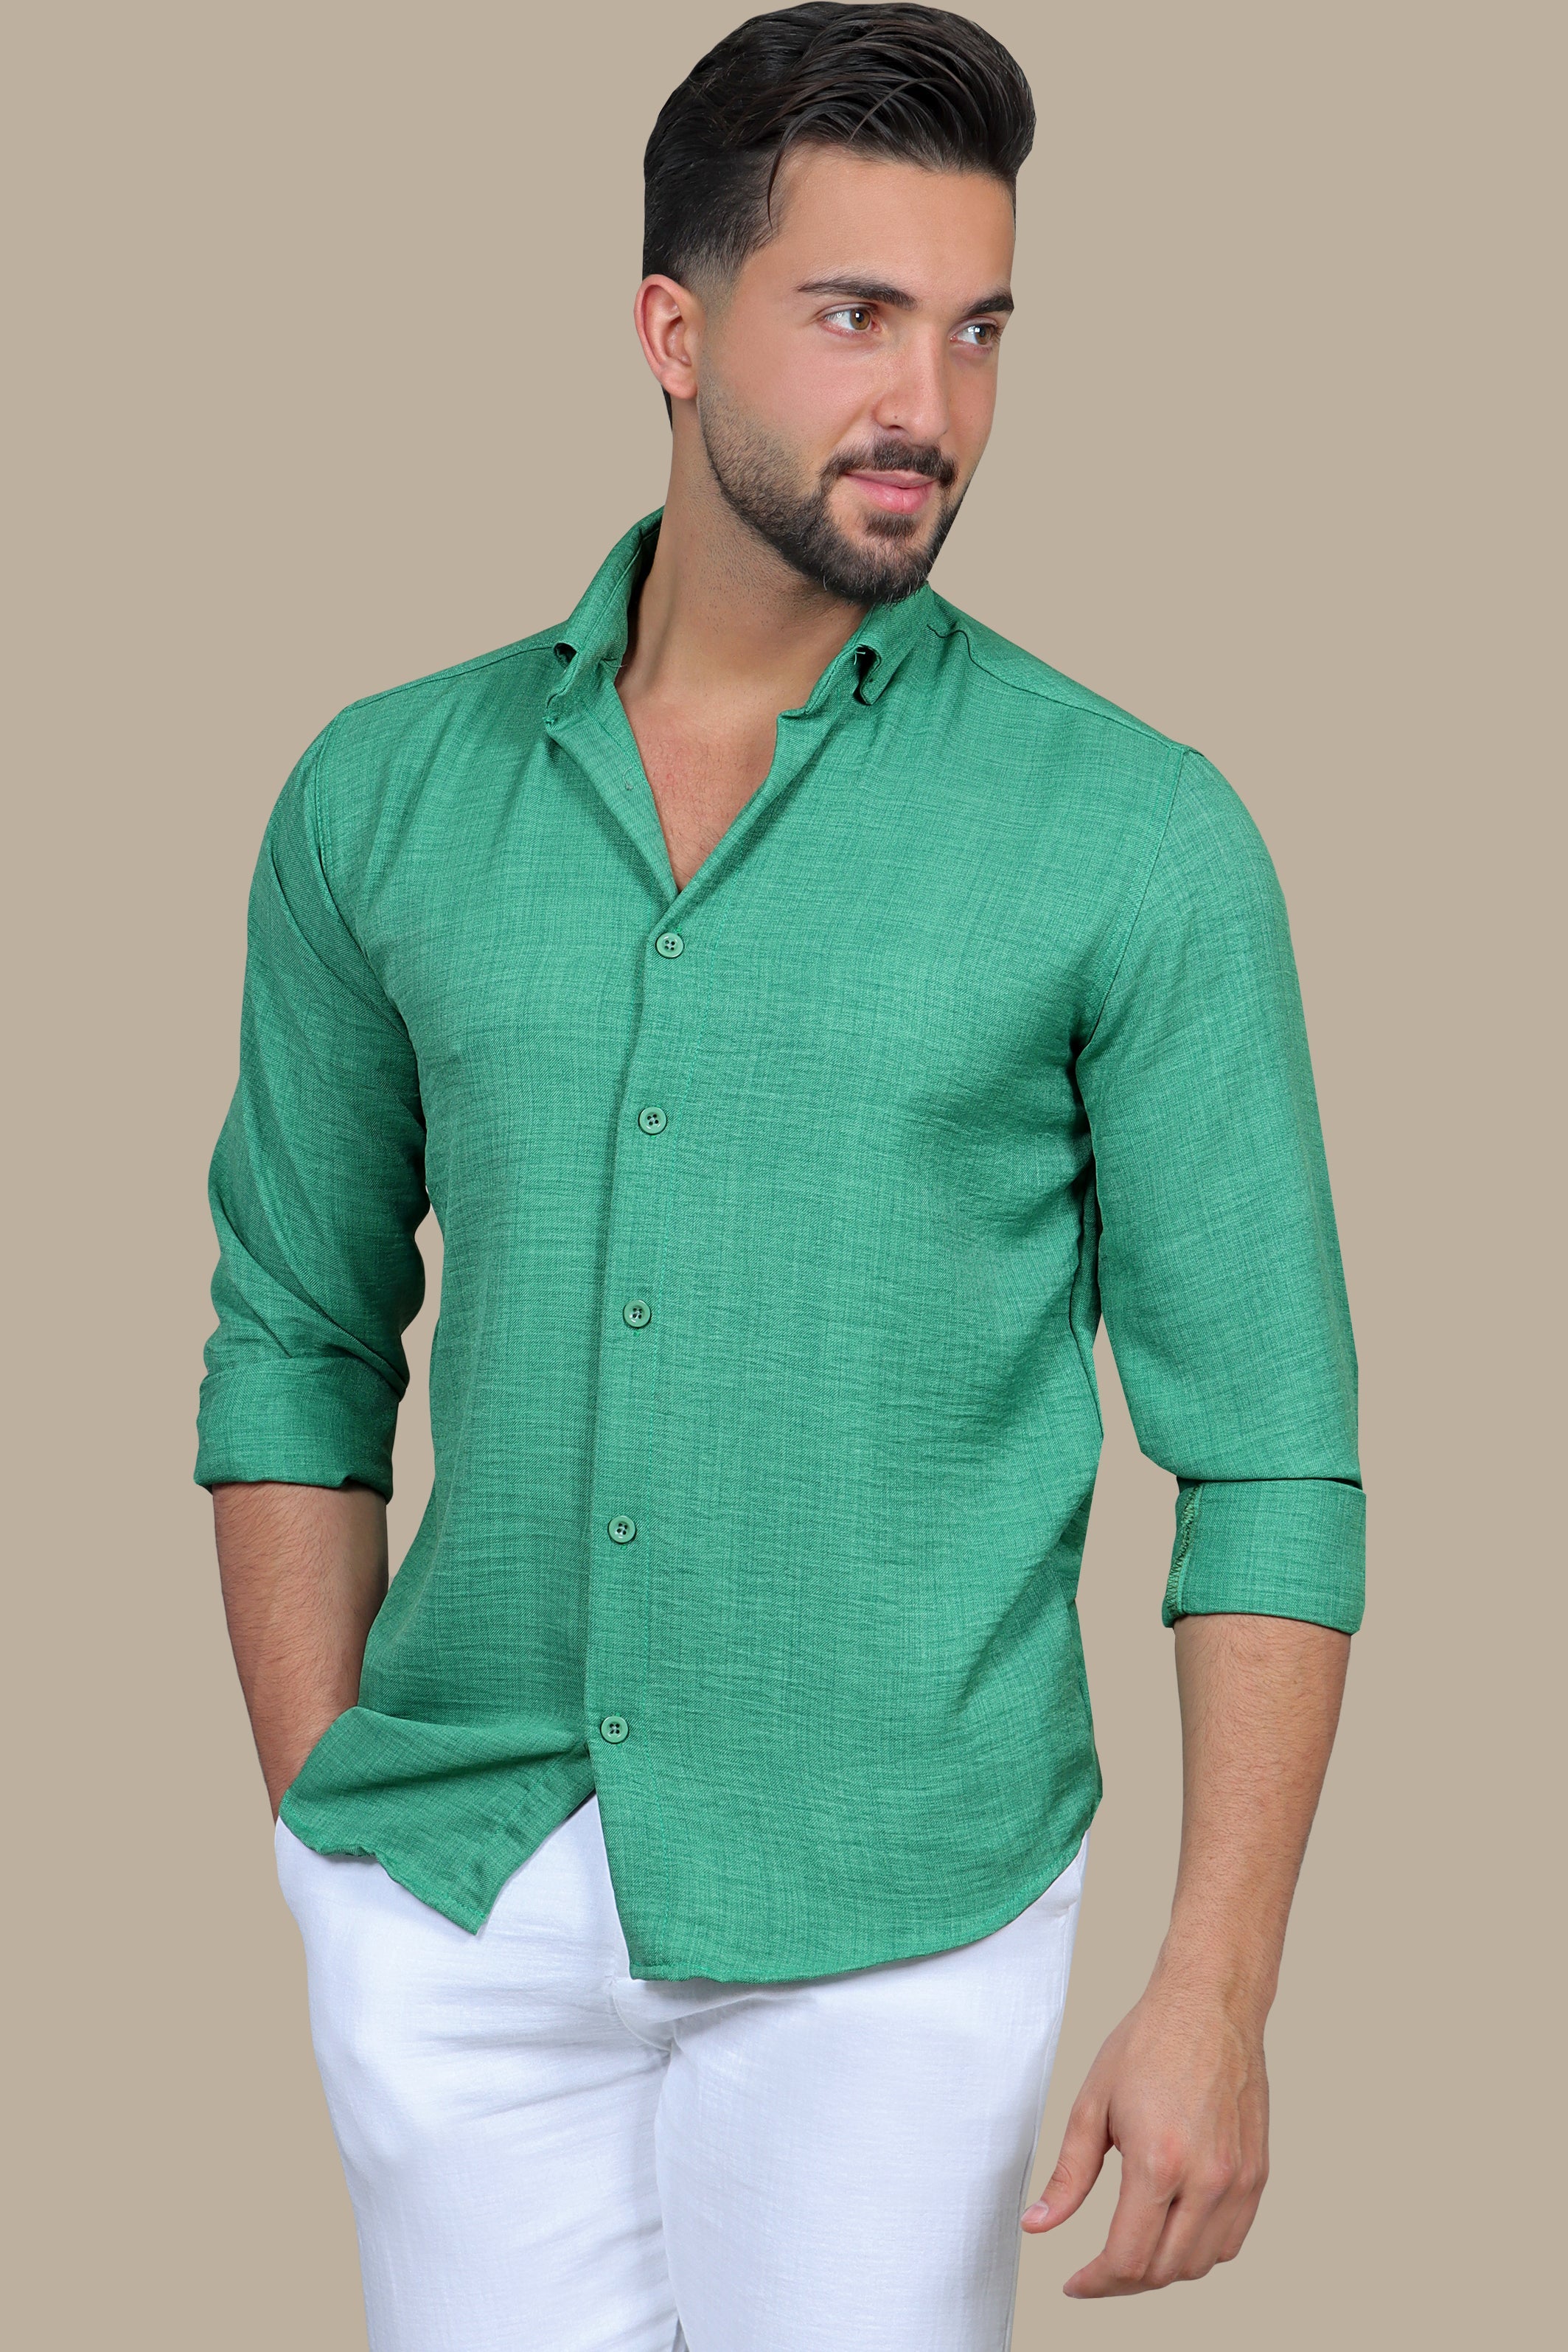 Evergreen Elegance: Classic Long Sleeve Linen Shirt